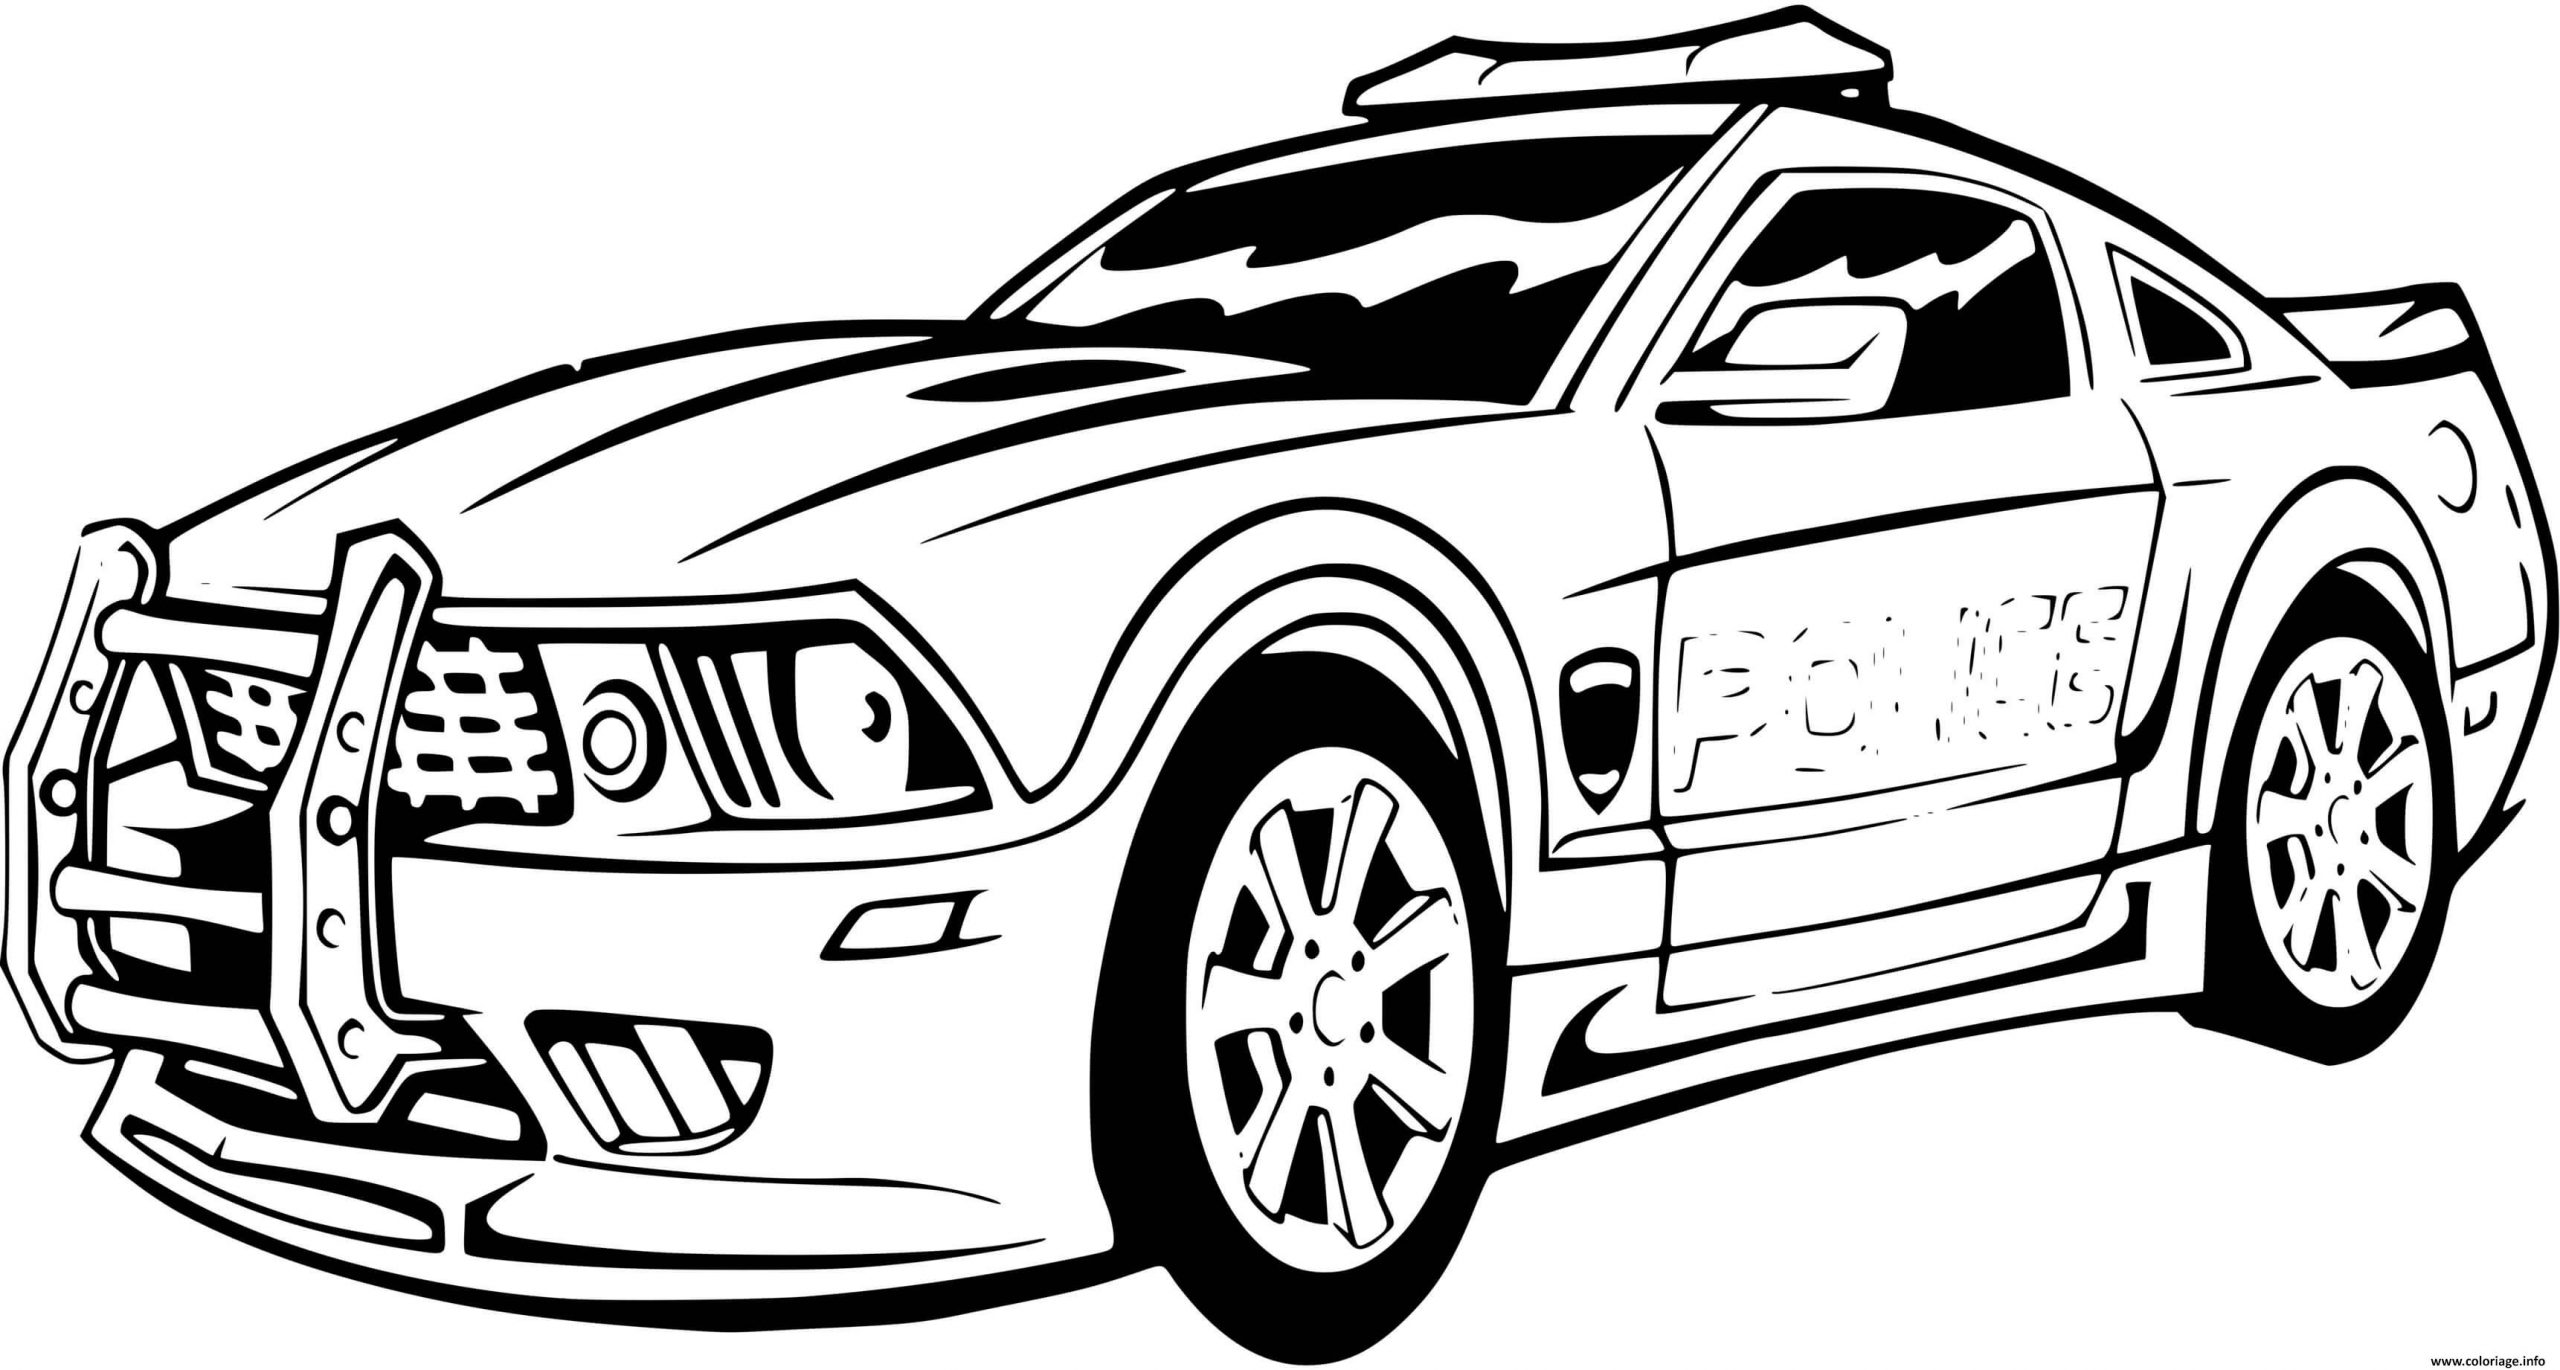 Coloriage Voiture De Police Sport Mustang Ford Dessin destiné Coloriage A Imprimer Voiture